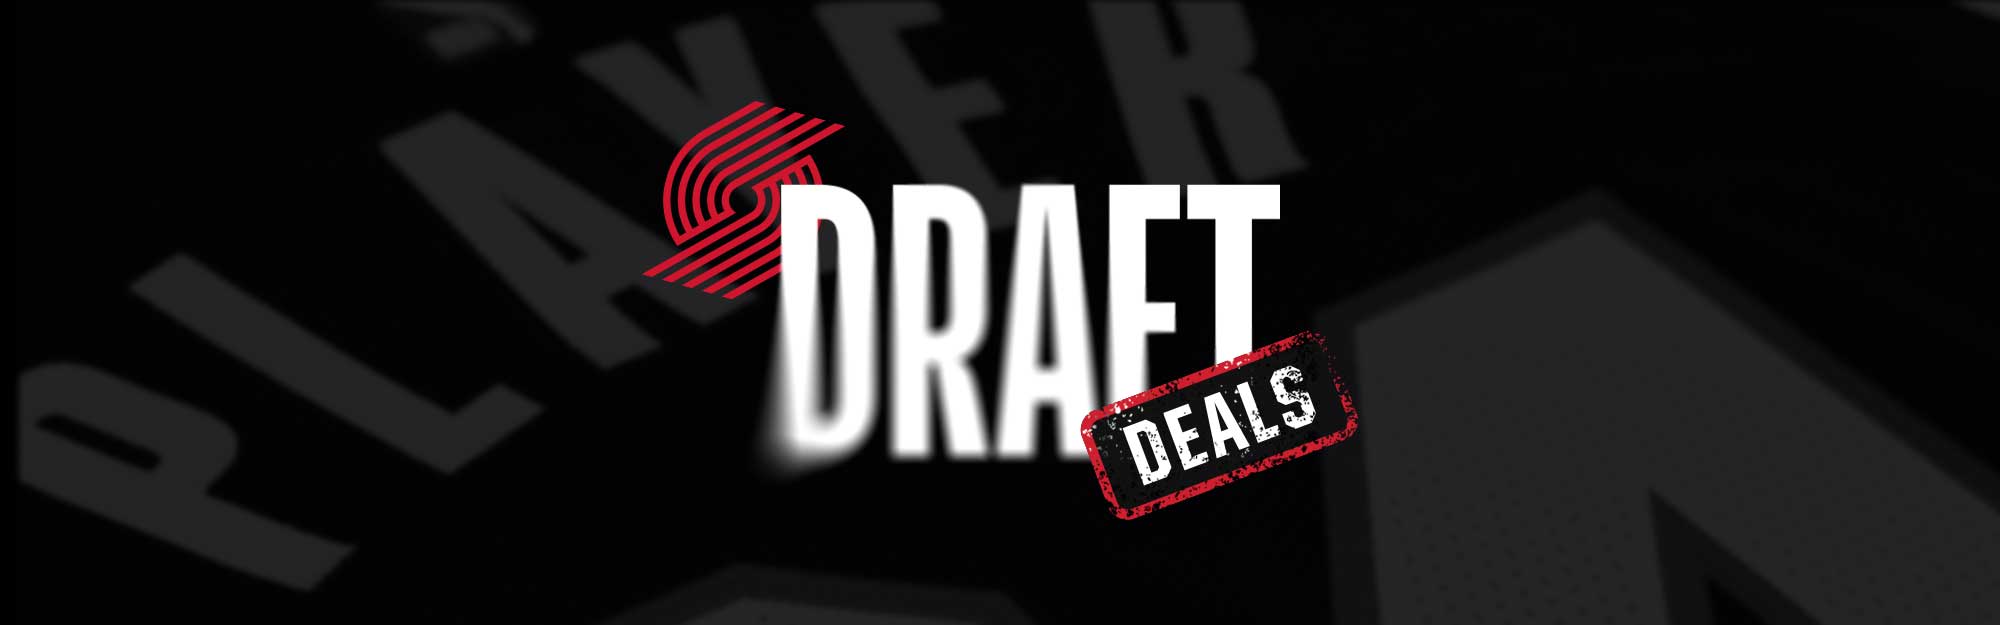 Draft Deals Banner